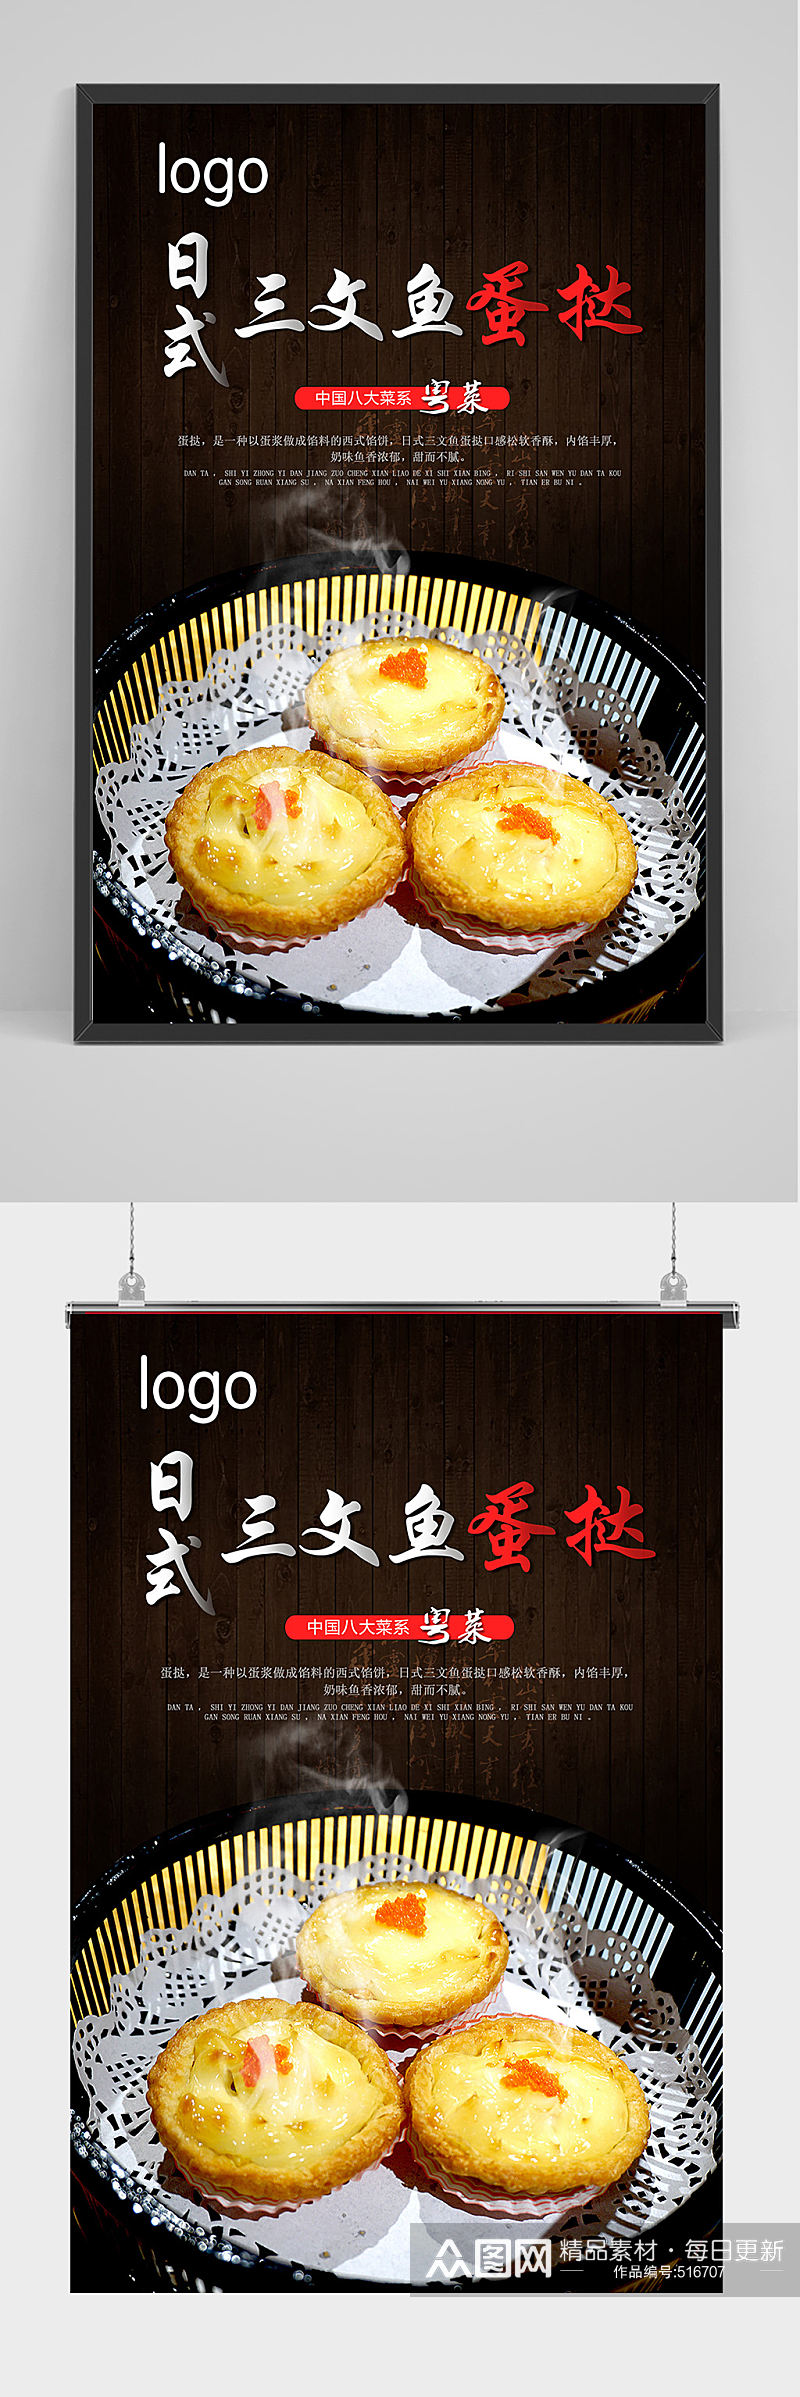 日式三文鱼 蛋挞 海报设计素材